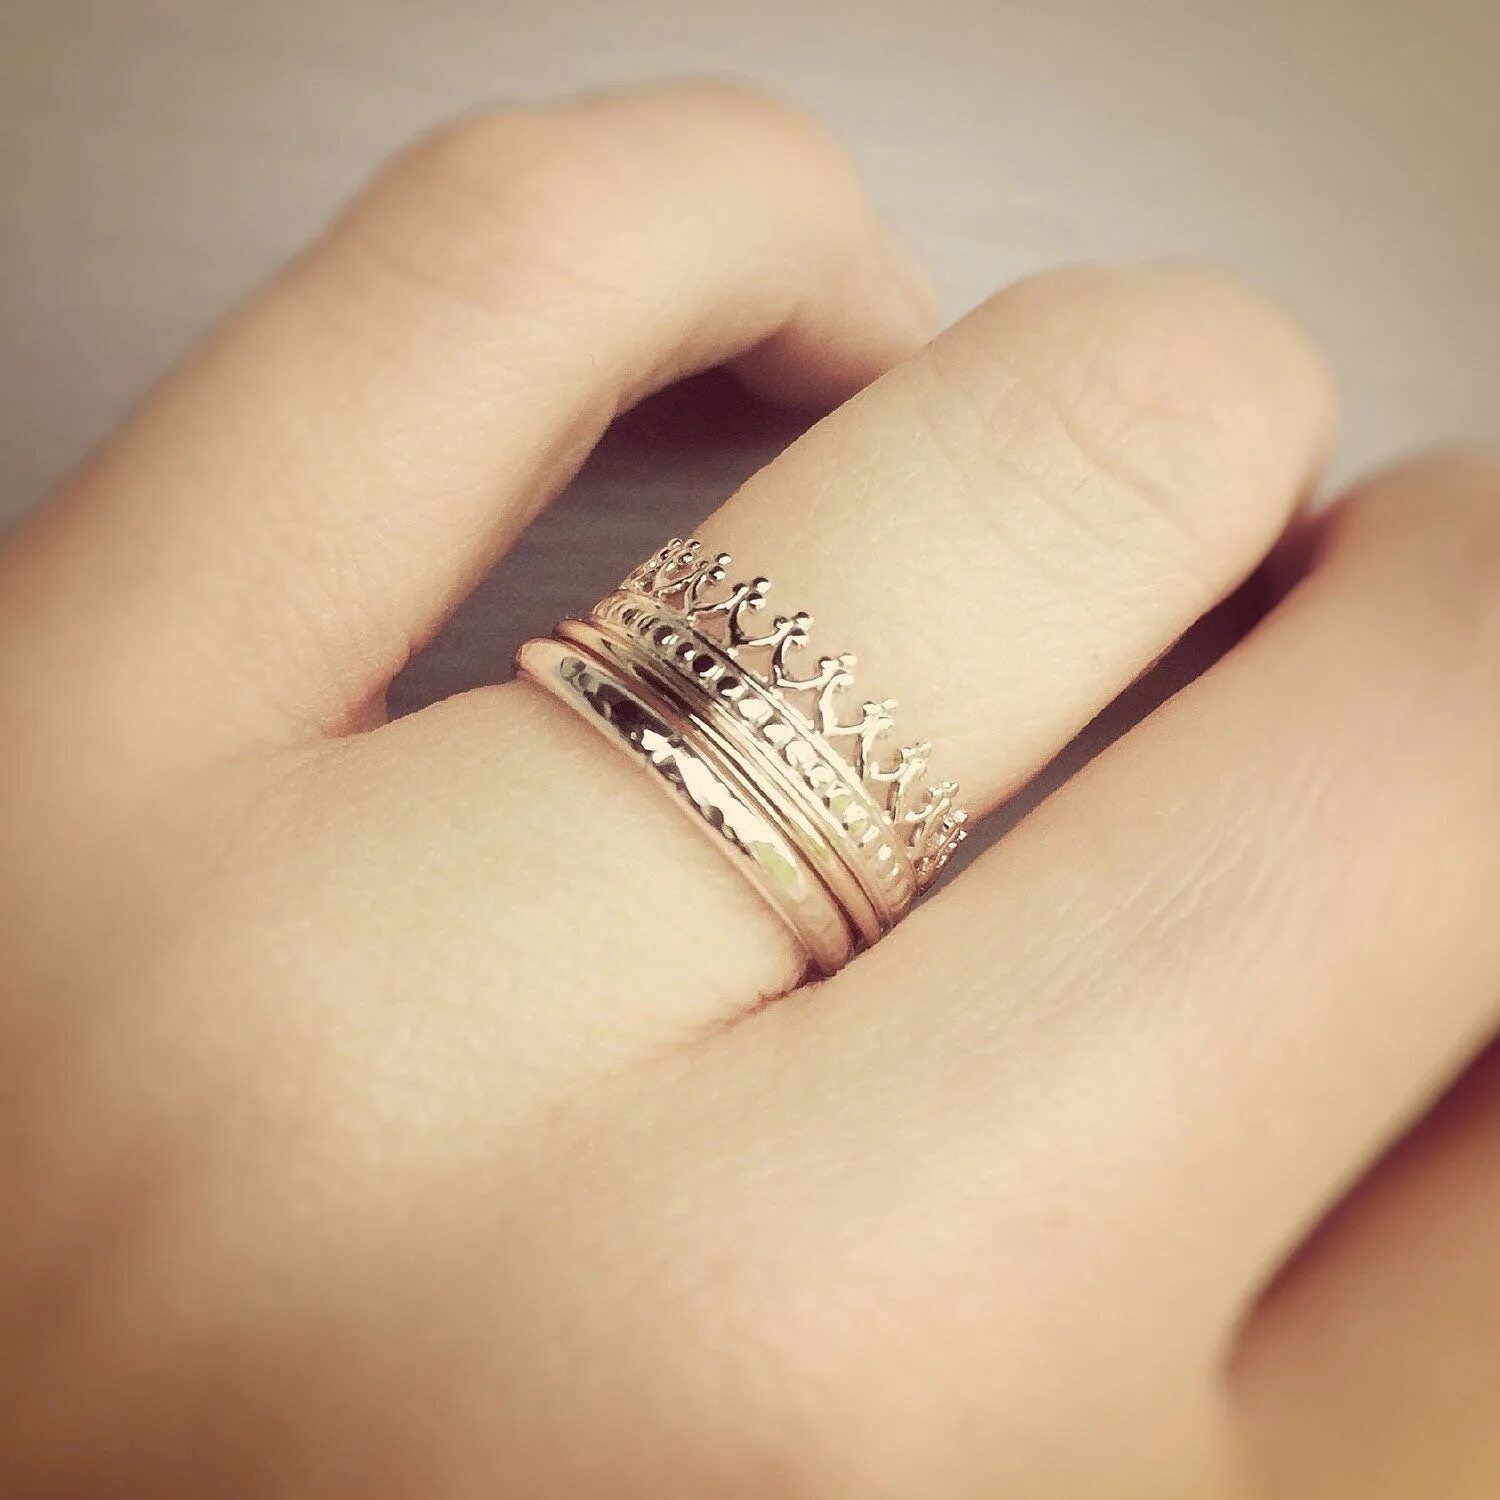 Красивое кольцо на палец. Красивые кольца. Золотое кольцо на пальце. Кольцо корона. Кольцо в виде короны.